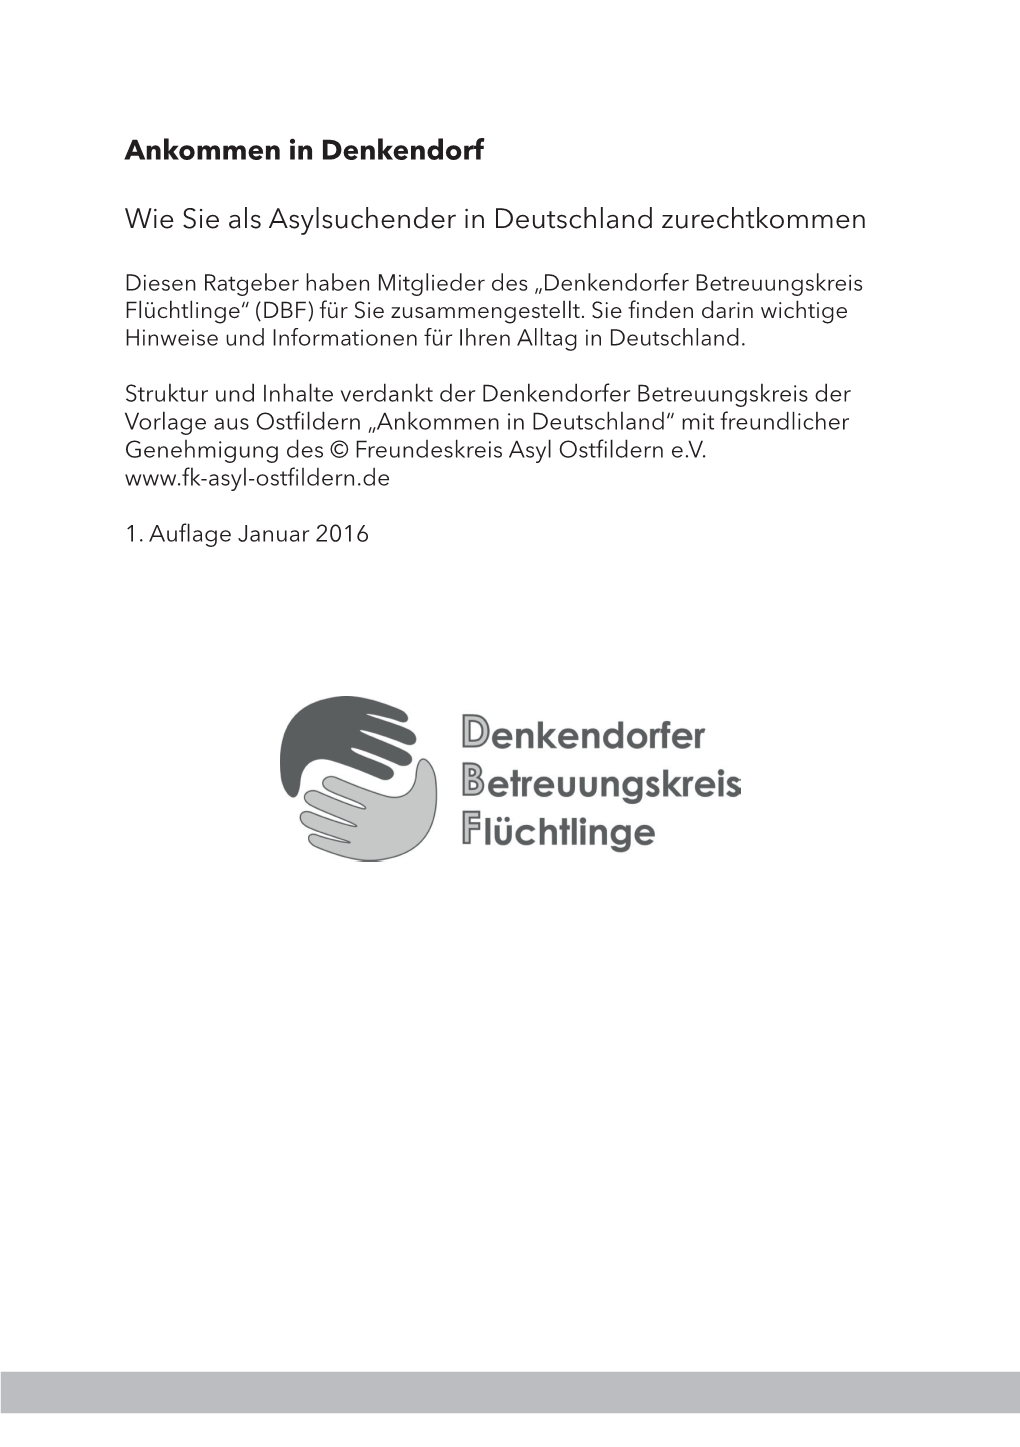 Ankommen in Denkendorf Wie Sie Als Asylsuchender in Deutschland